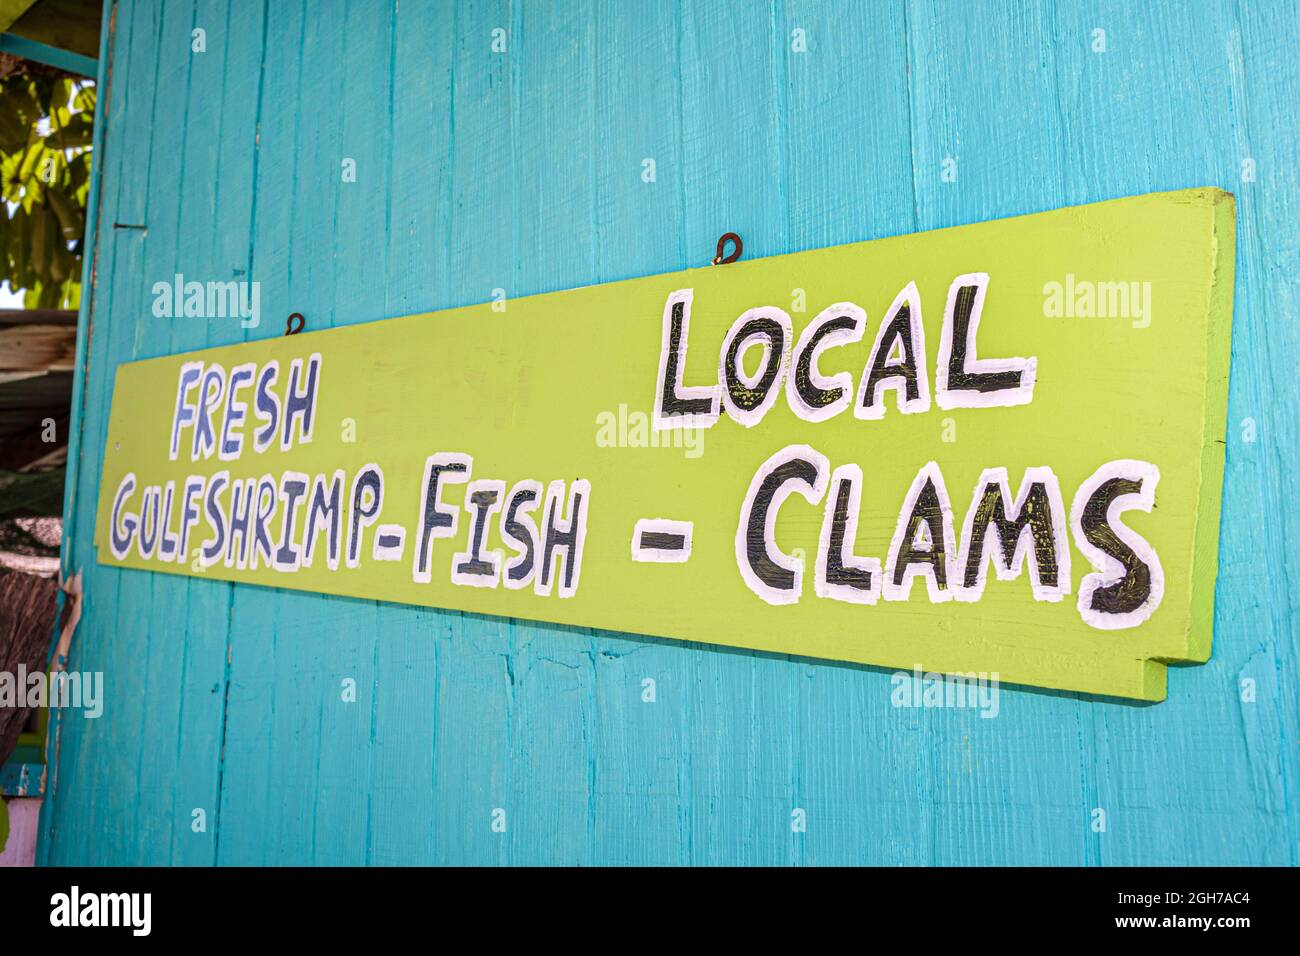 Port de Floride Charlotte Harbour, marché aux poissons Placida, panneau peint à la main palourdes crevettes crevettes crevettes fruits de mer frais locaux Banque D'Images